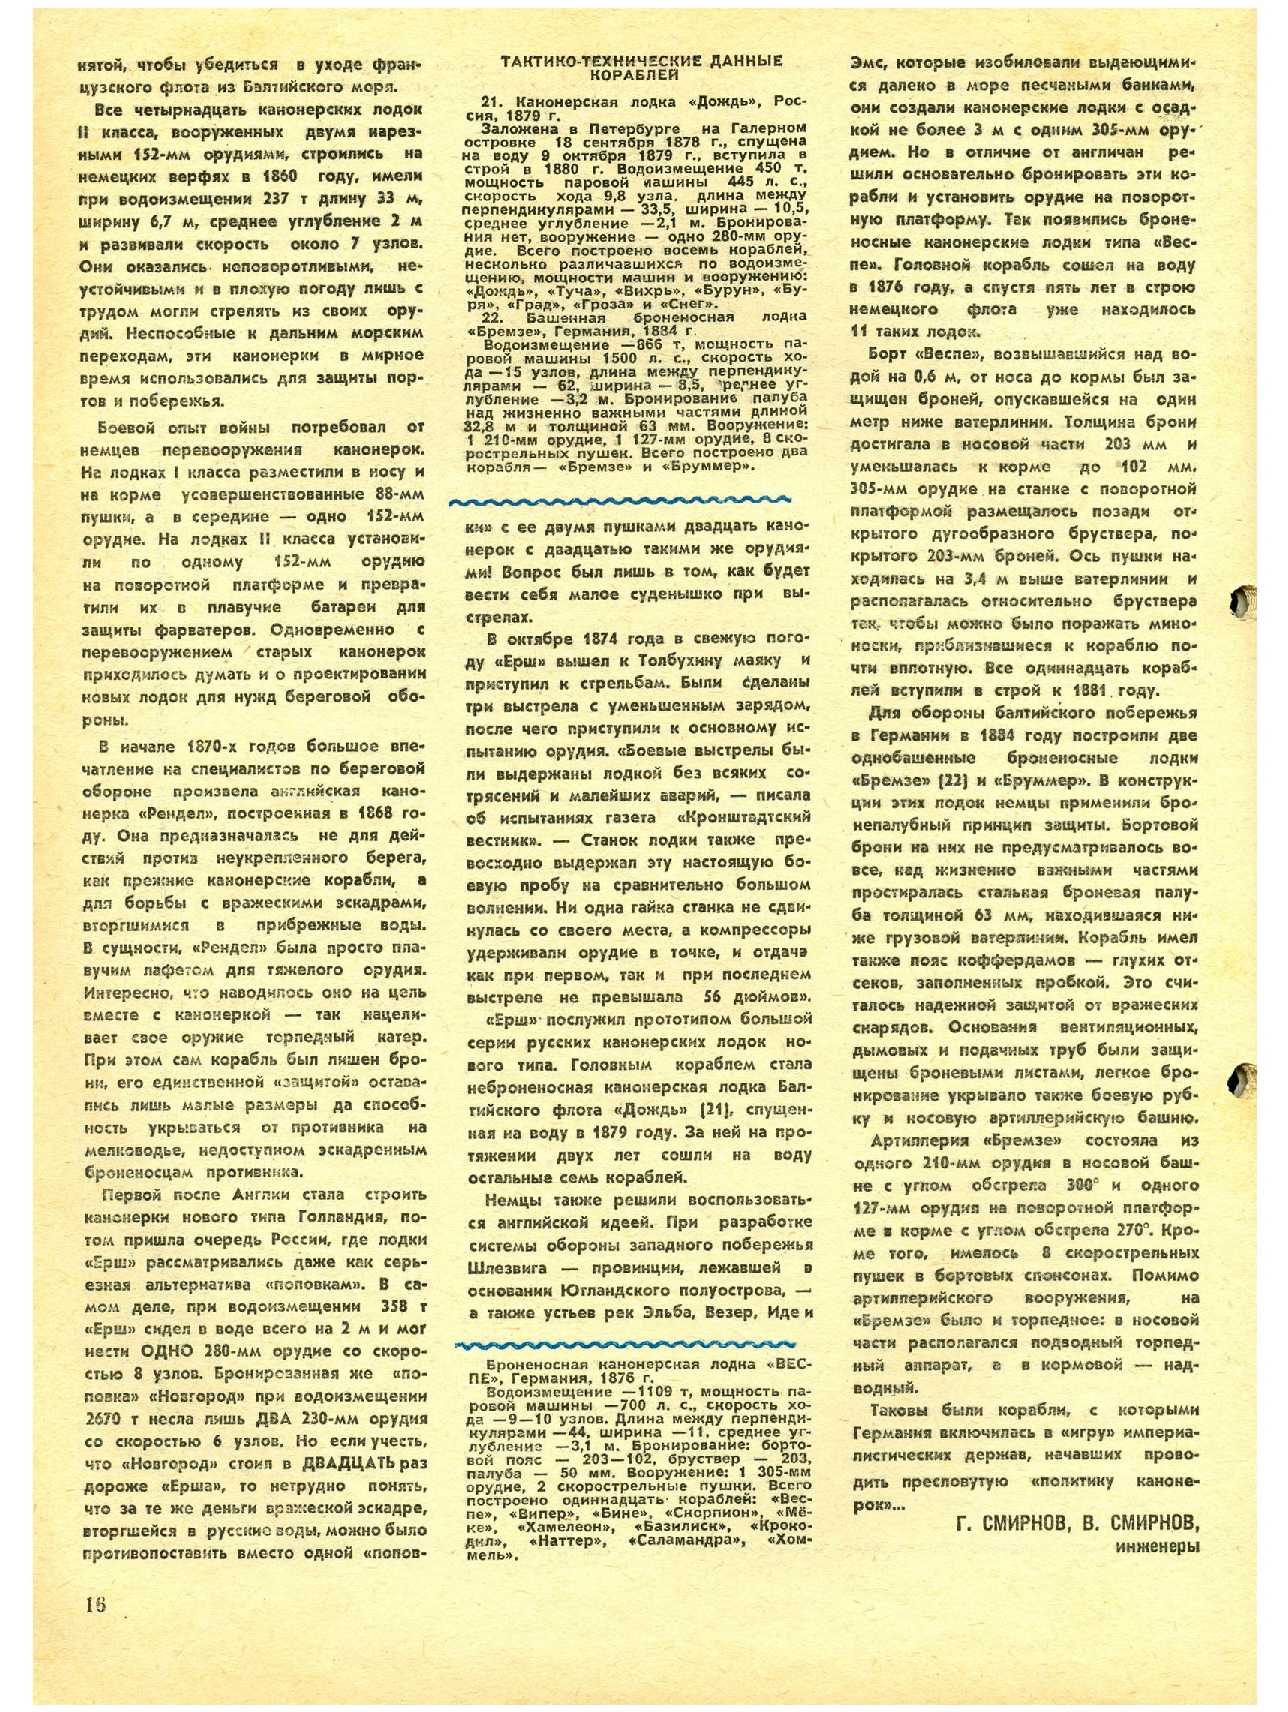 МК 4, 1984, 16 c.